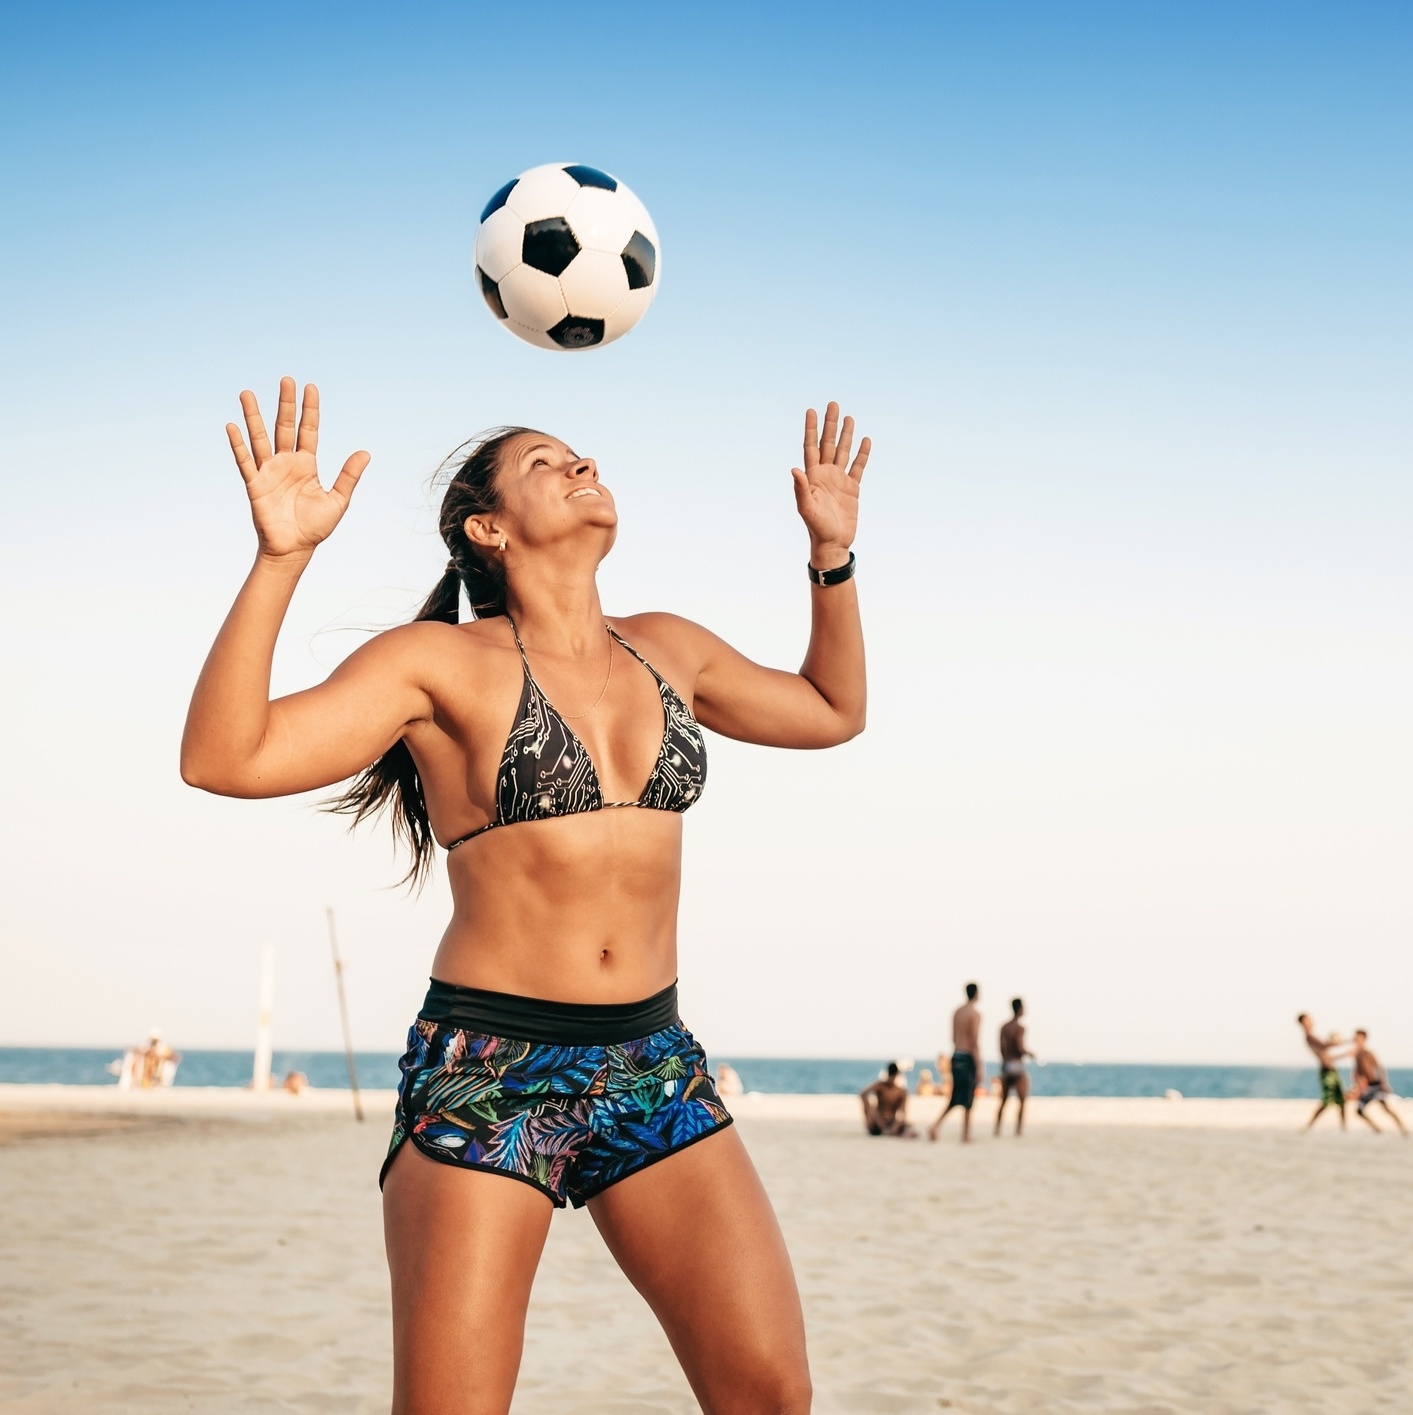 Jogar futebol traz benefícios para a saúde da mulher